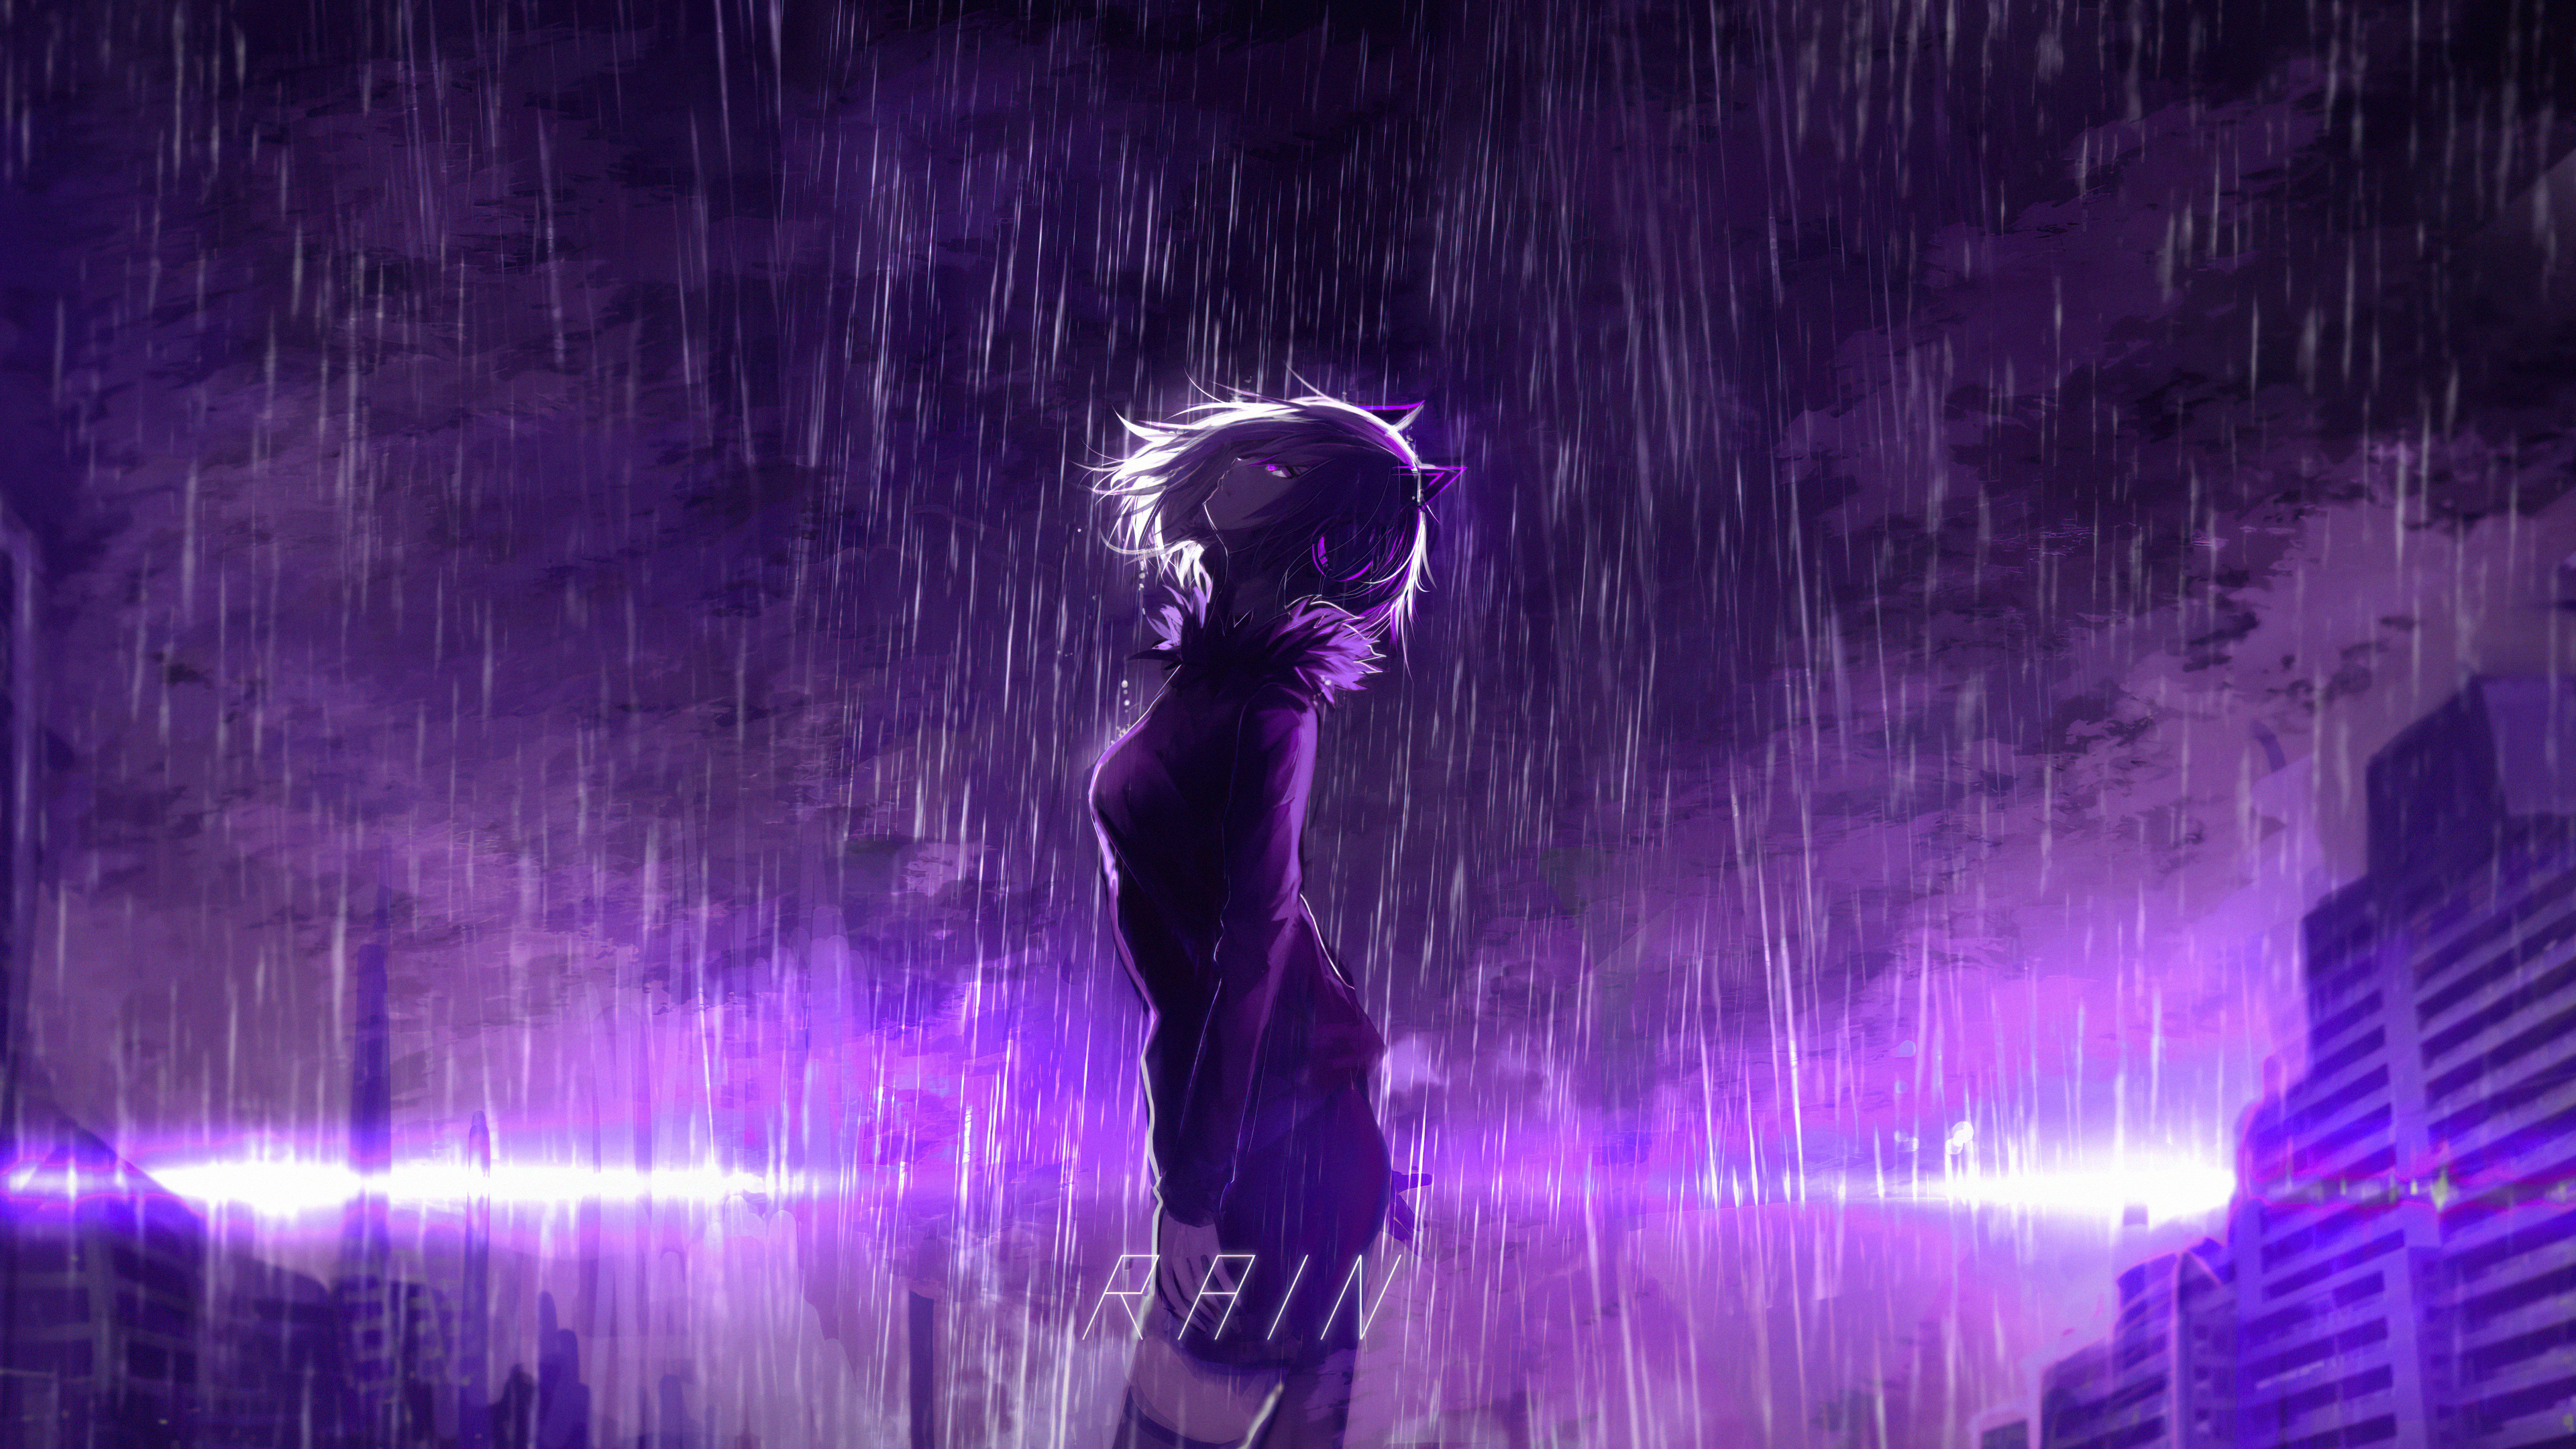 Với hình nền Anime tím mưa, bạn sẽ được trải nghiệm sự đẹp mộng mơ của màu tím kết hợp với nét đậm nét nhạt của những giọt mưa. Cảm nhận được sự lãng mạn và ấm áp của thế giới Anime màu tím mưa này.